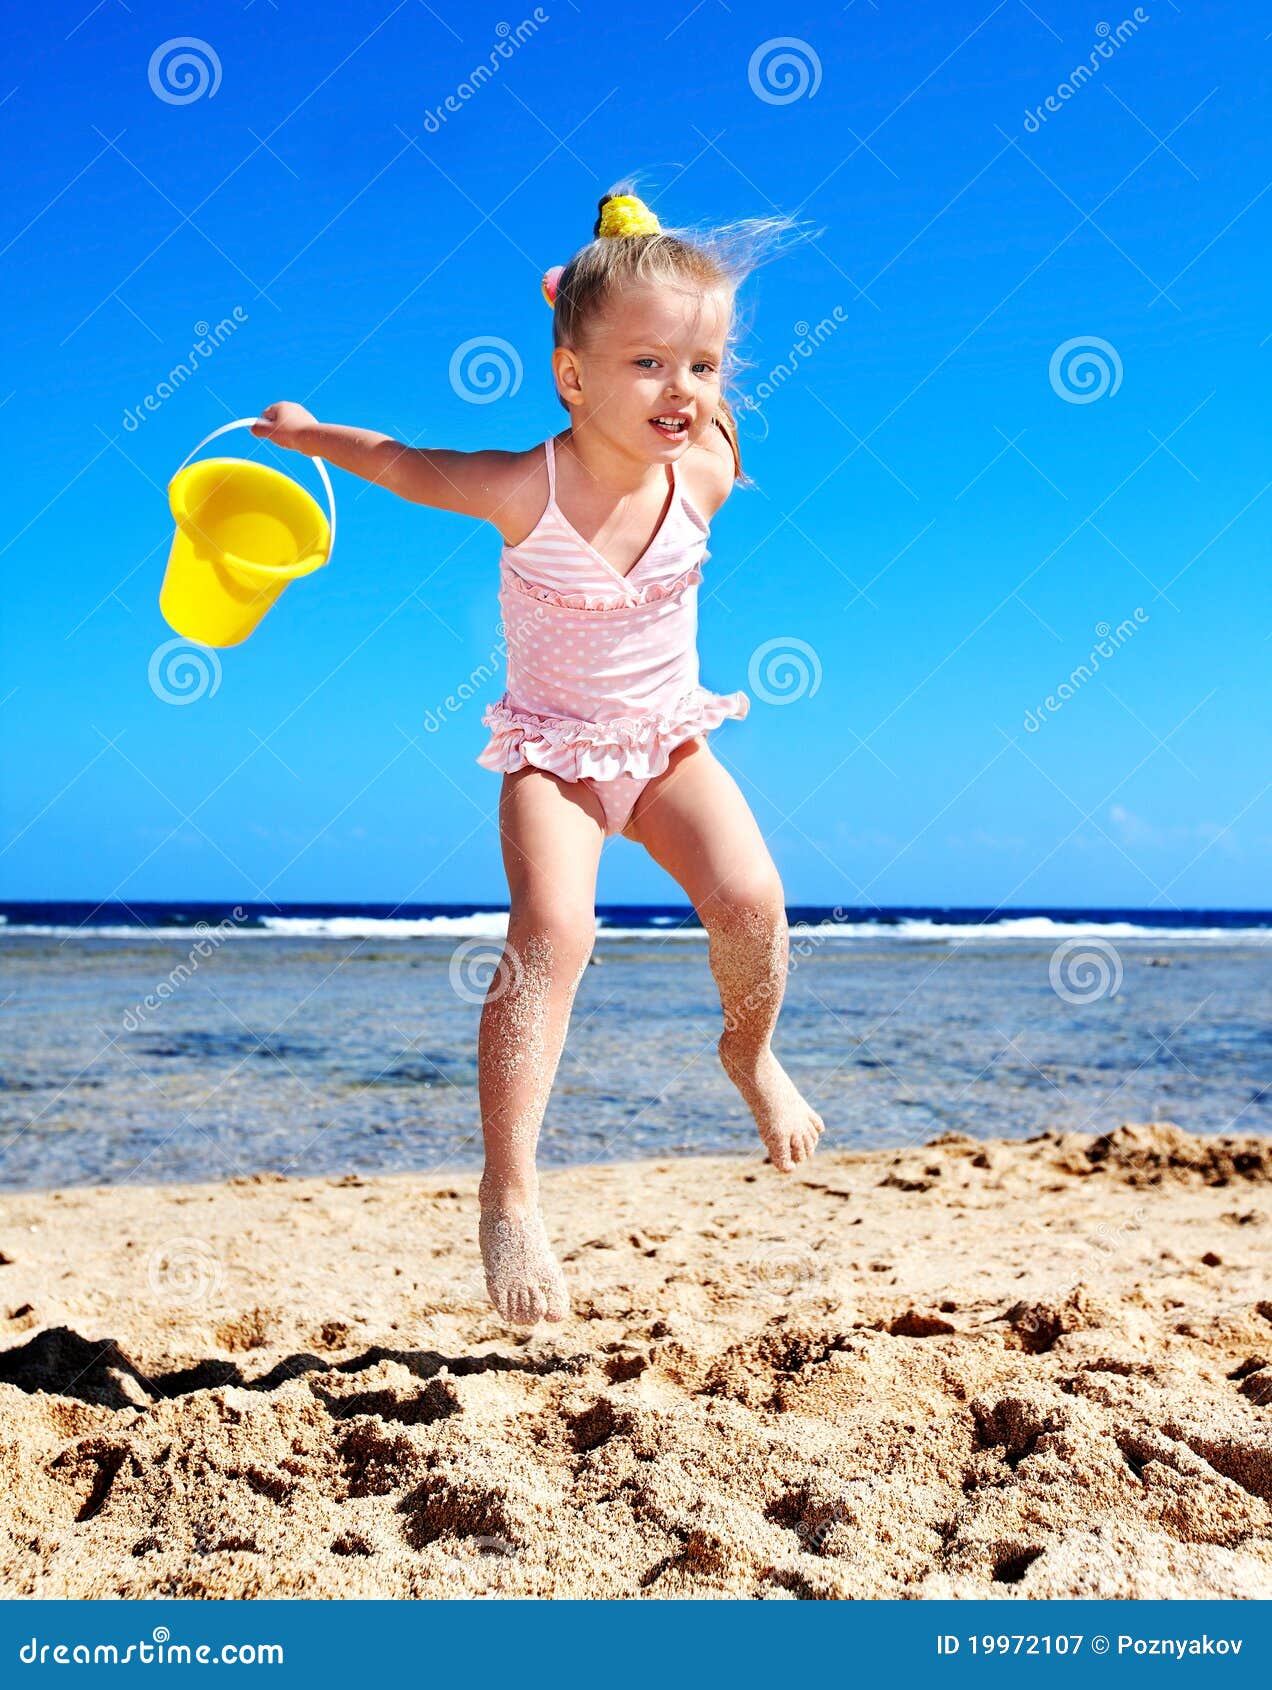 фото дети на голом пляже фото 1